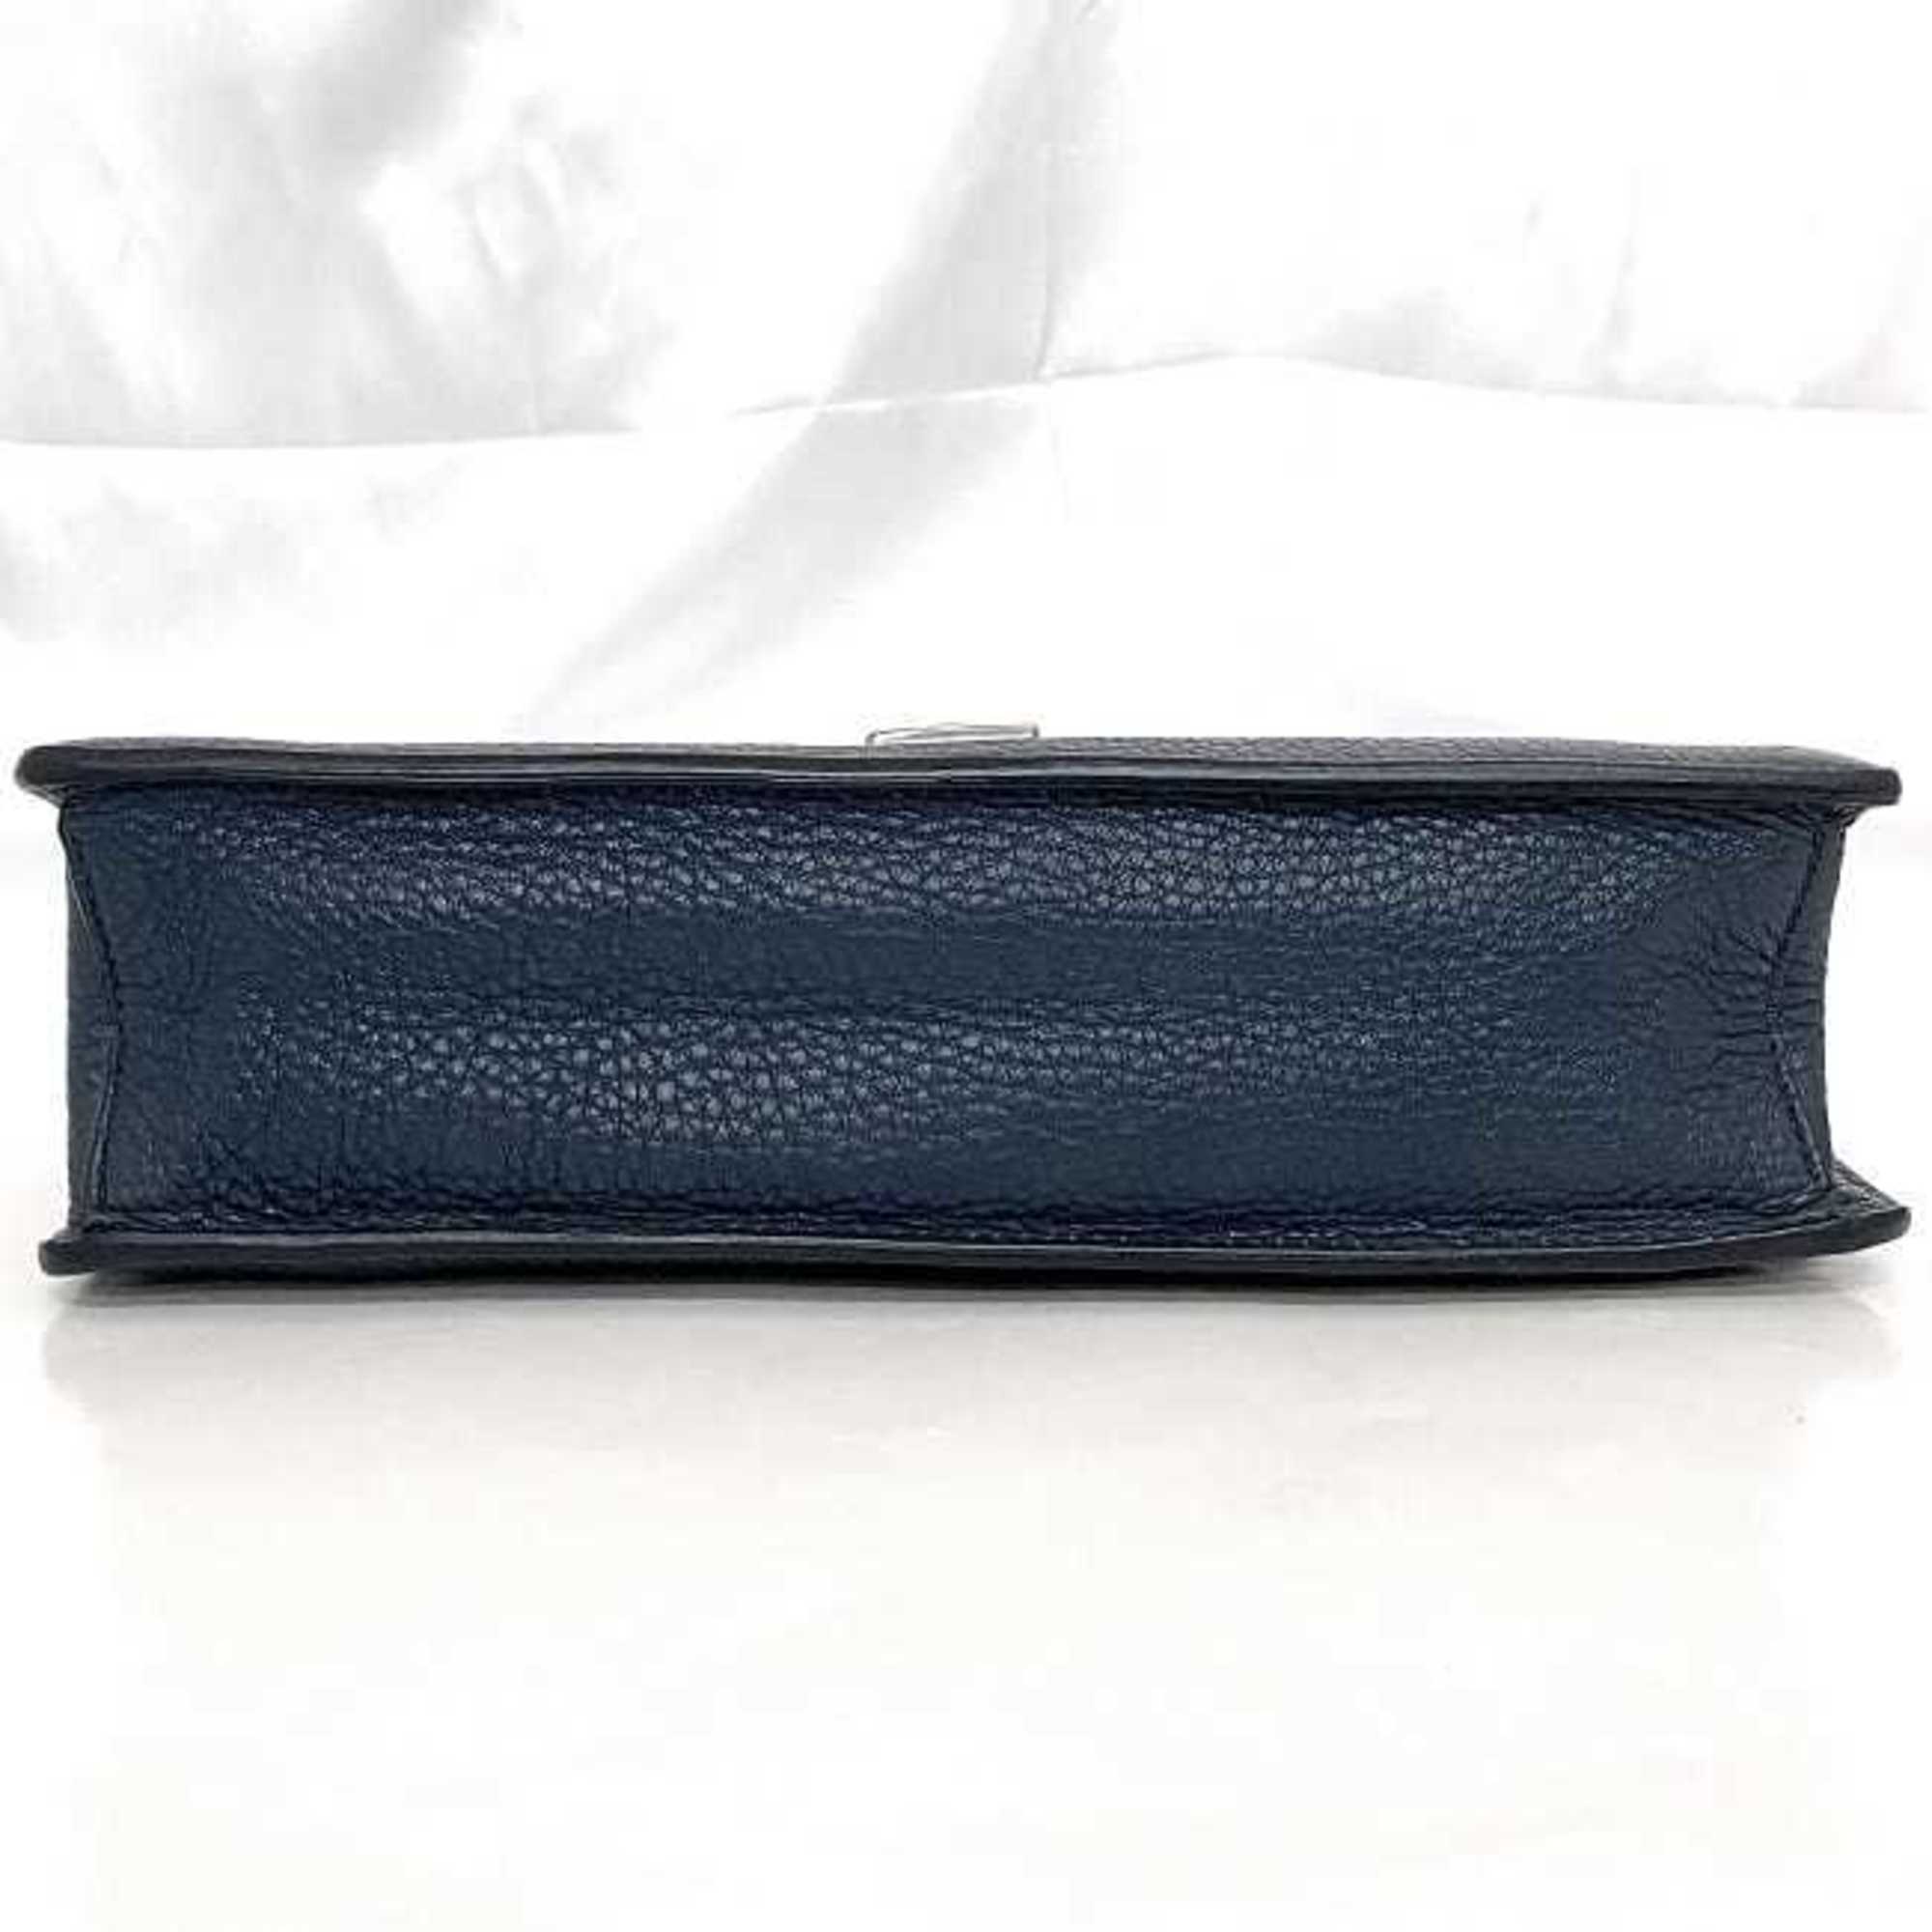 Prada Second Bag Blue VR0092 f-20558 with Strap Saffiano Leather PRADA Clutch Handbag Flap Triangle Plate Men's